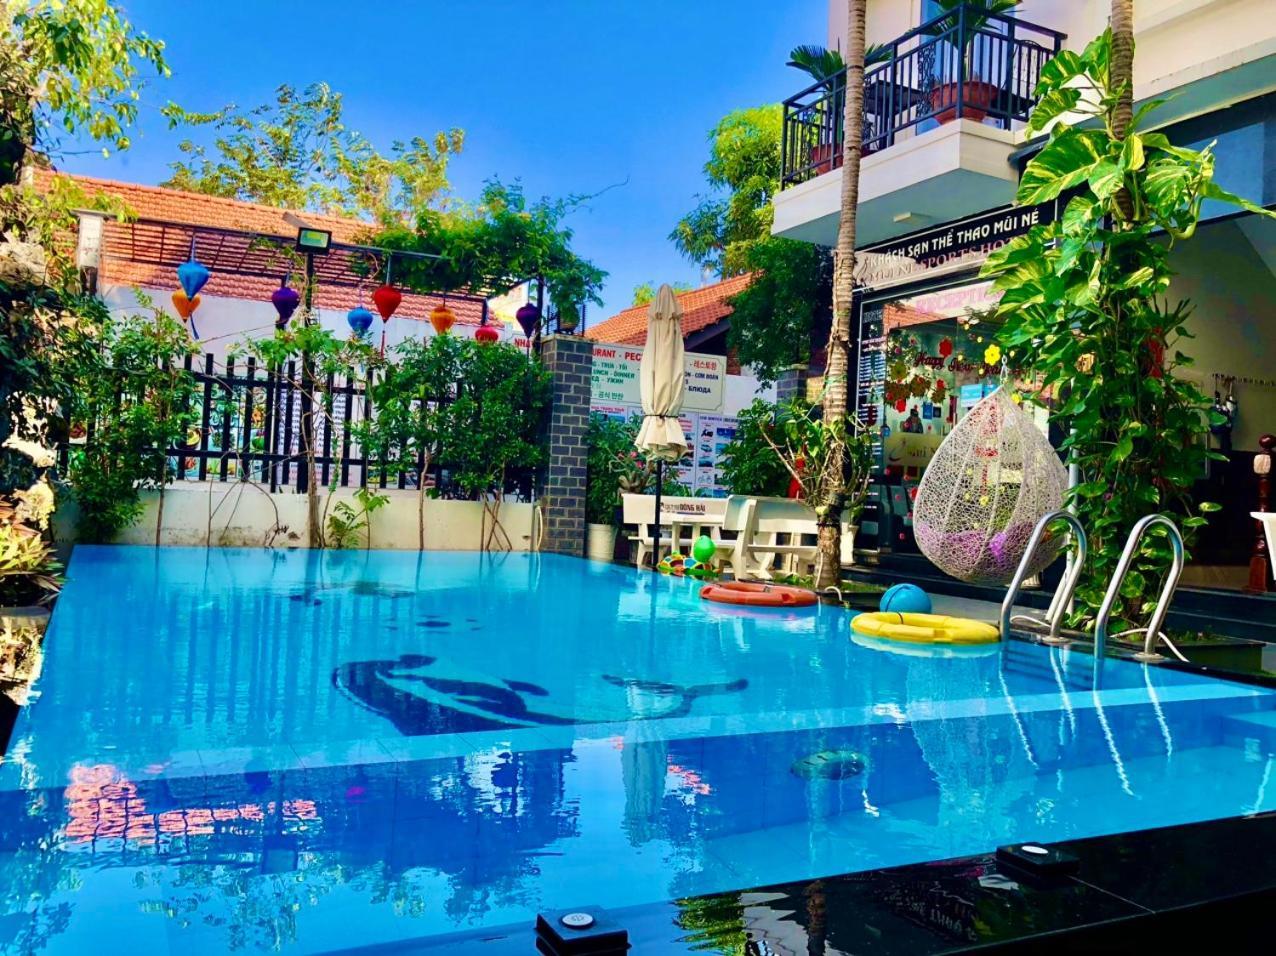 Muine Sports Hotel - Khách sạn Thể Thao Mũi né Extérieur photo